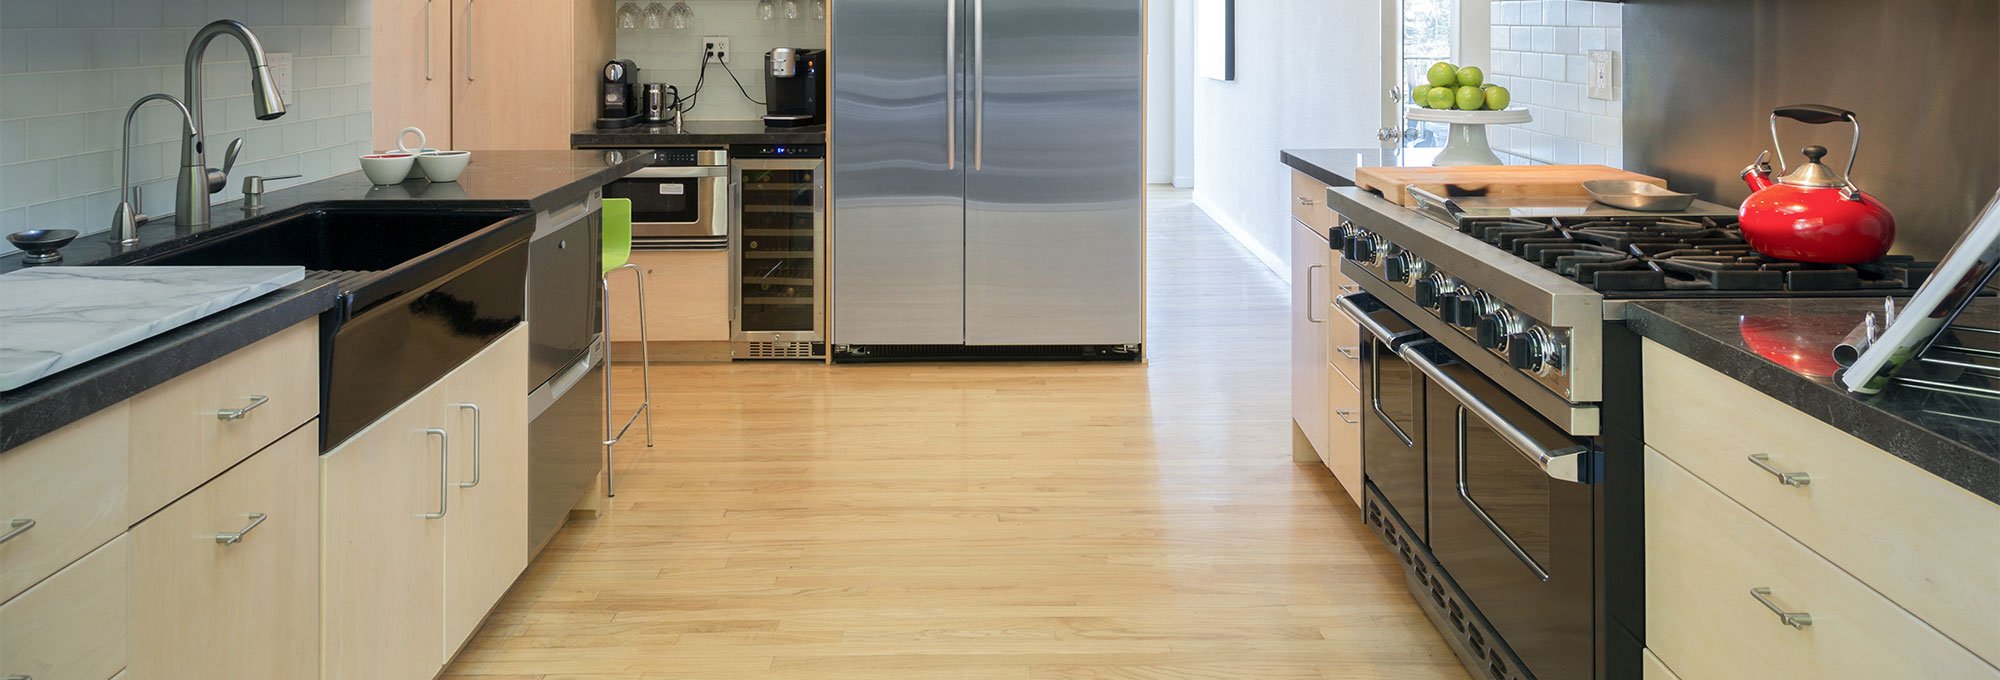 Kitchen Laminate Flooring Ideas